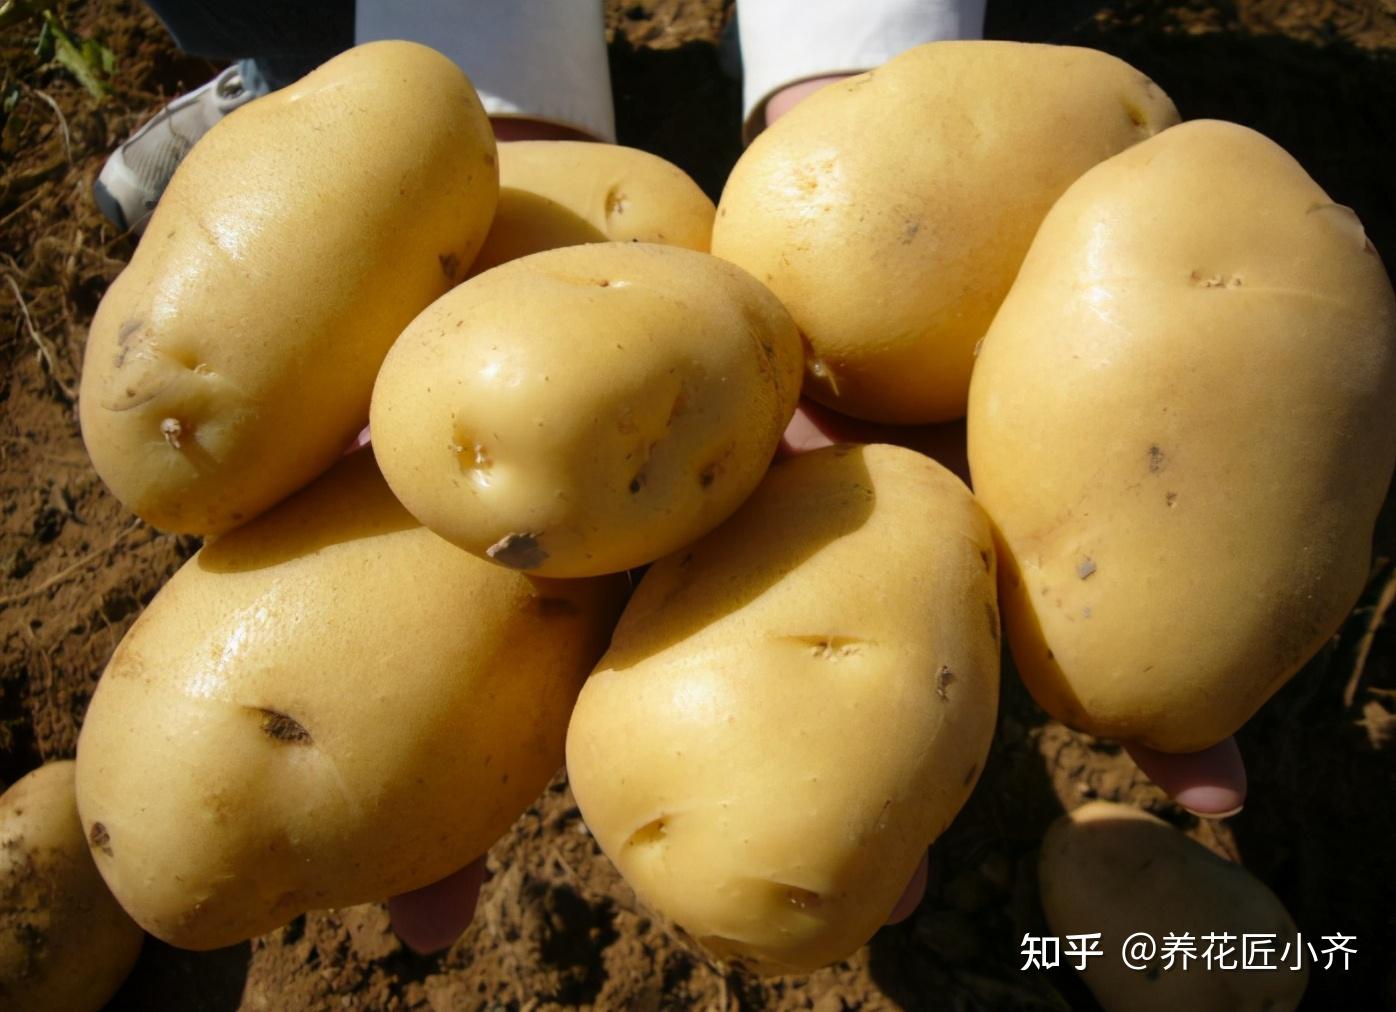 兰陵县大仲村镇:小土豆托起大产业-在临沂